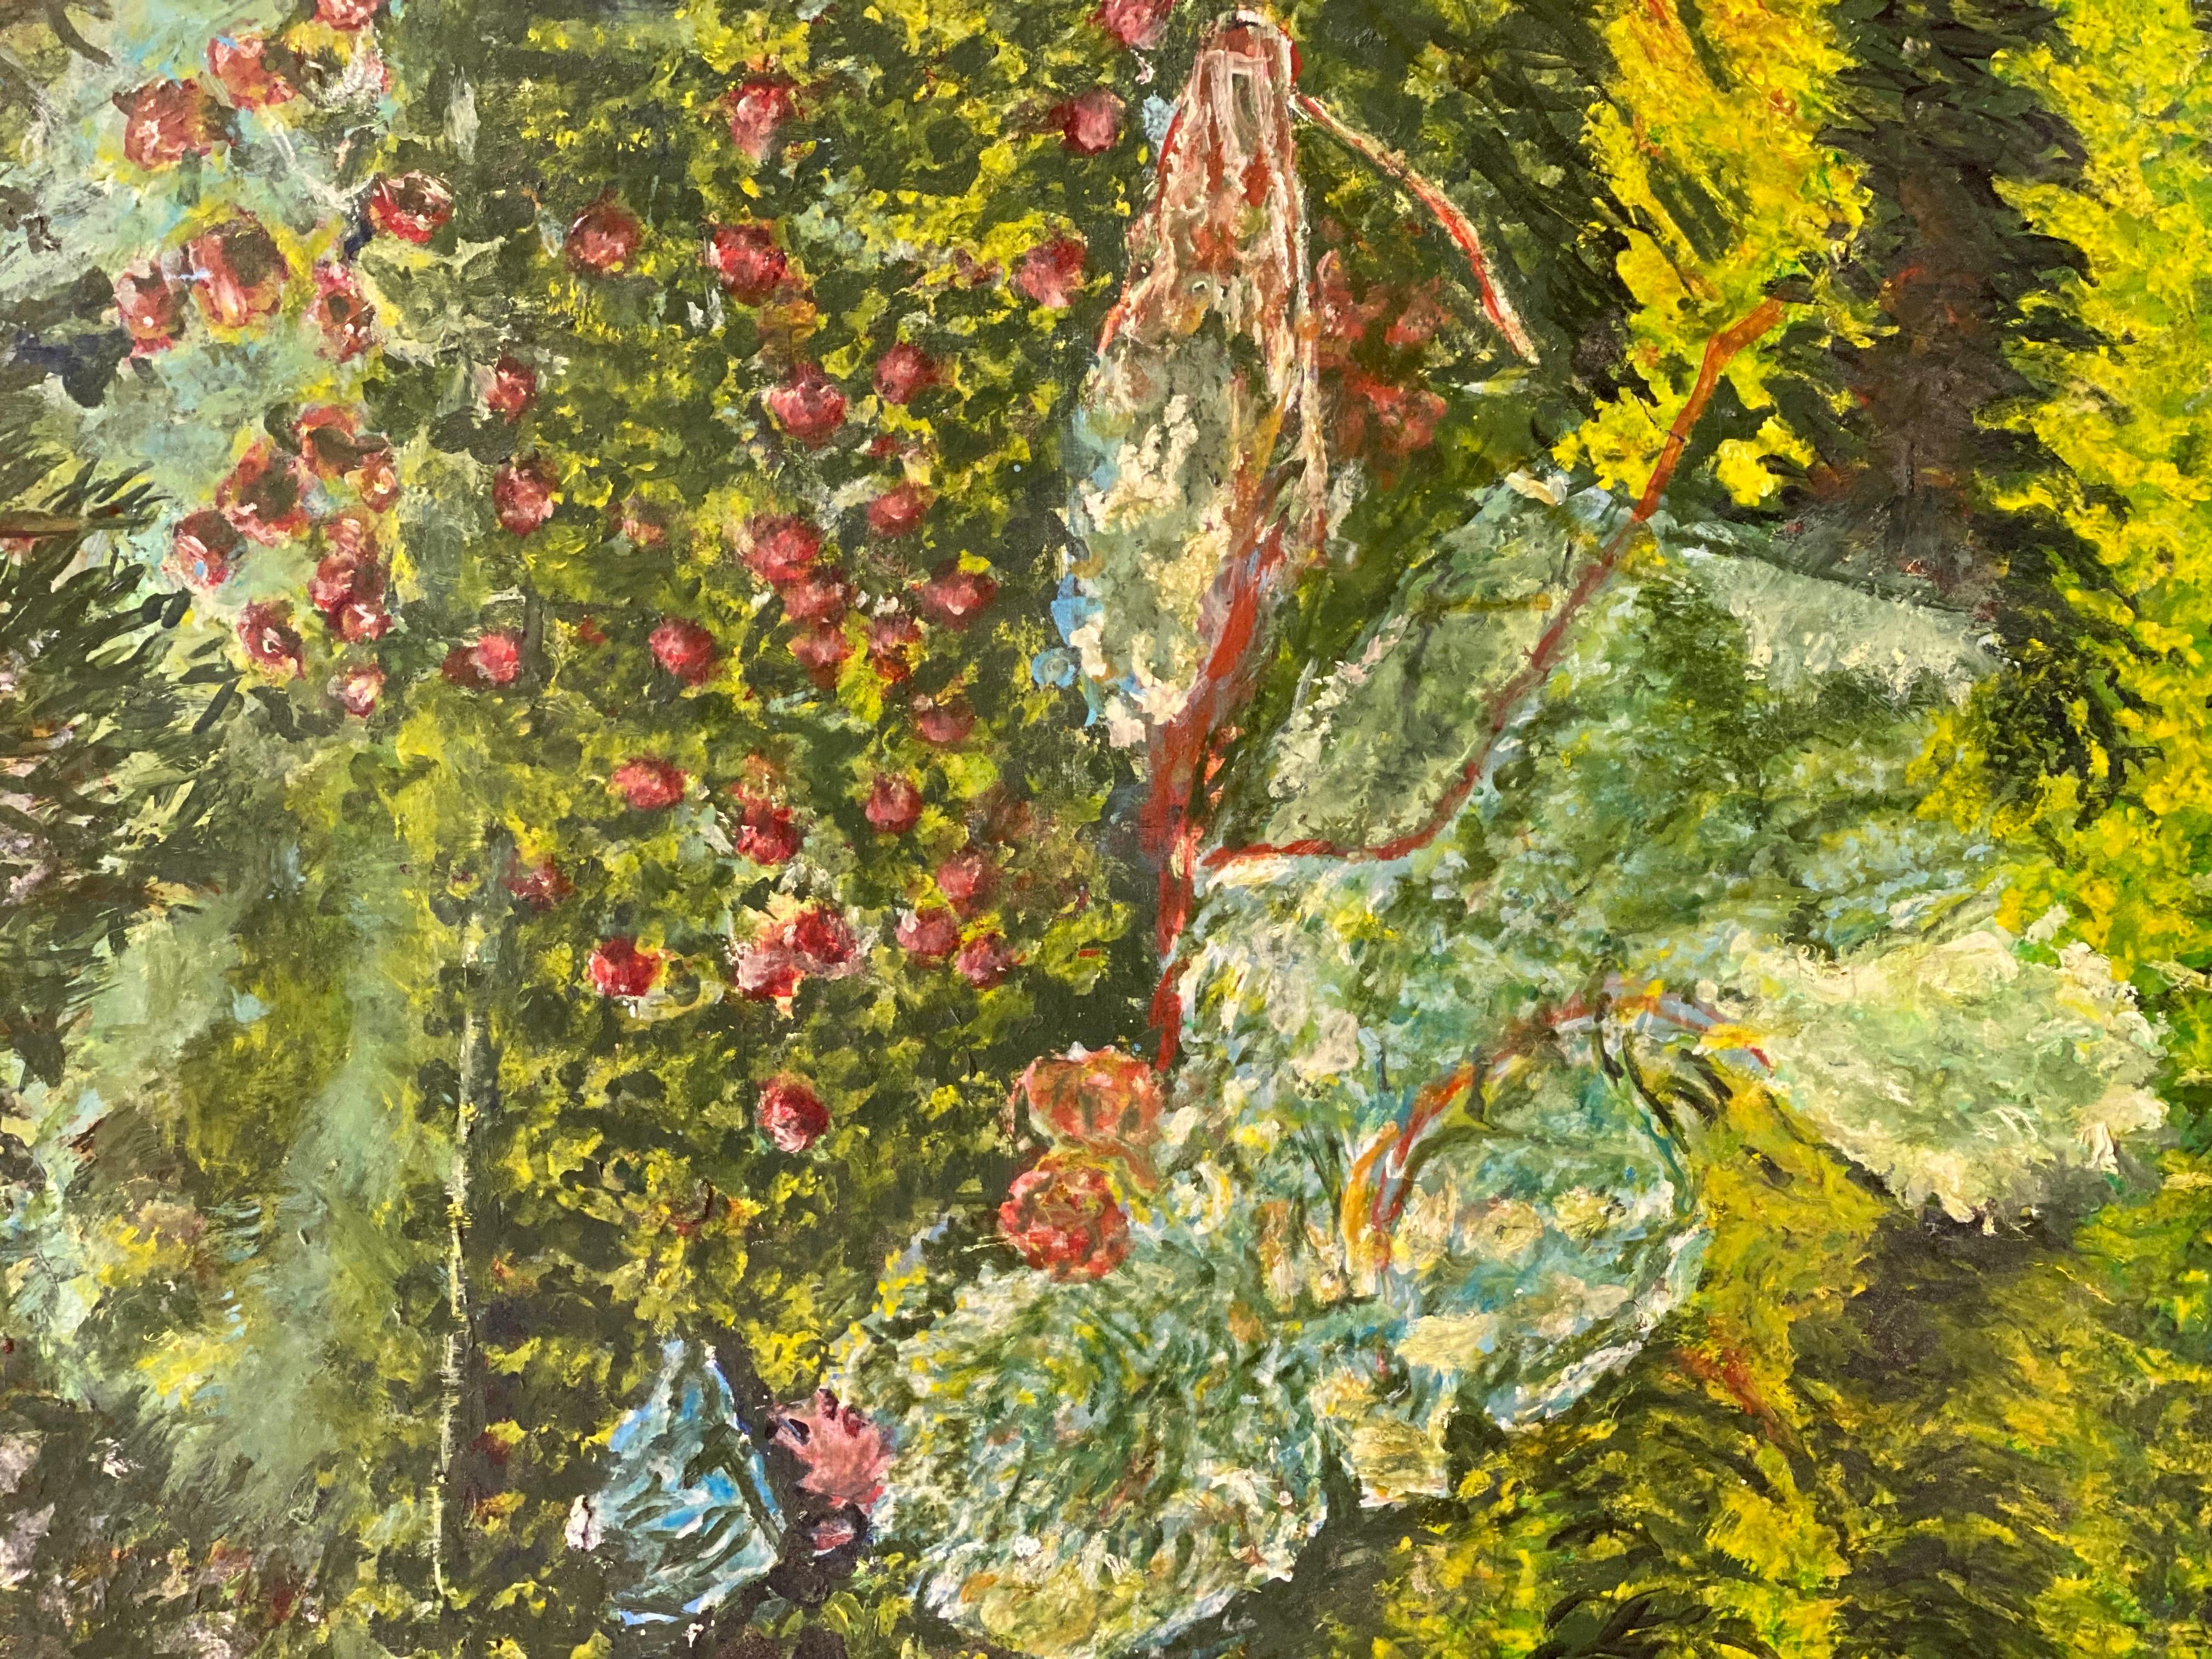 Magnifique dame impressionniste française lisant dans un jardin de fleurs - Impressionnisme Painting par French Impressionist